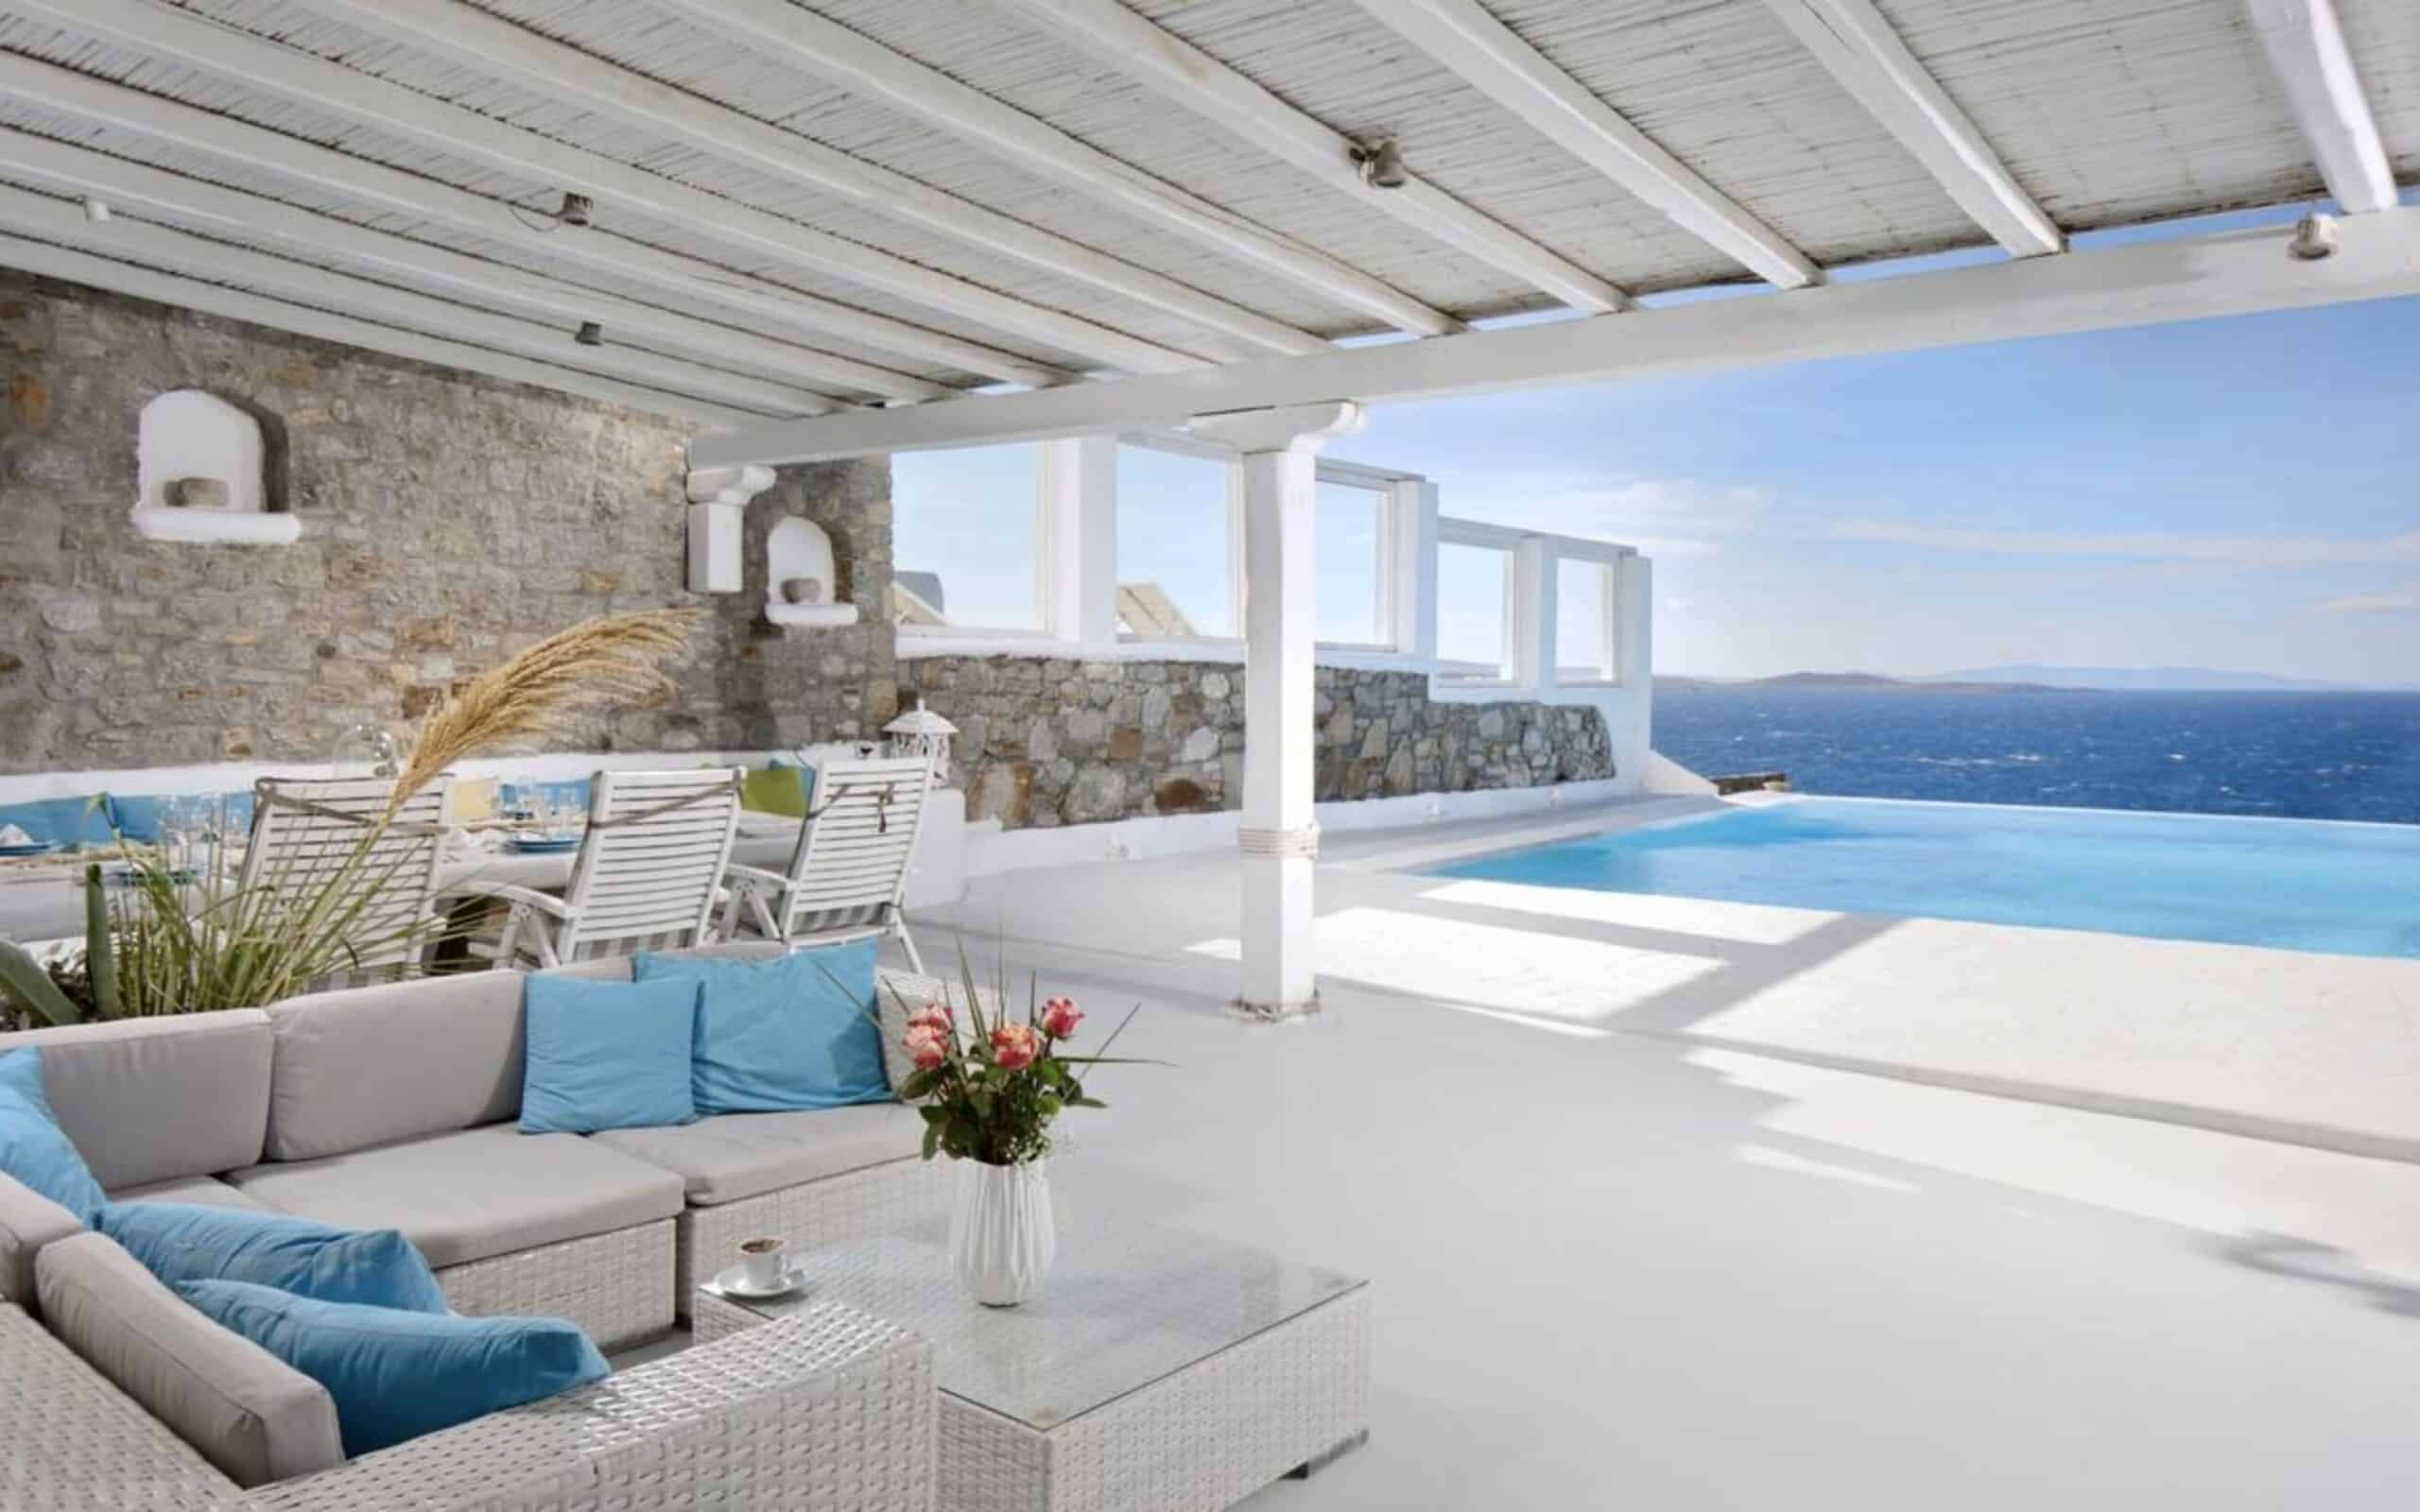 Villa Mykonos avec piscine et magnifique vue sur la mer Égée